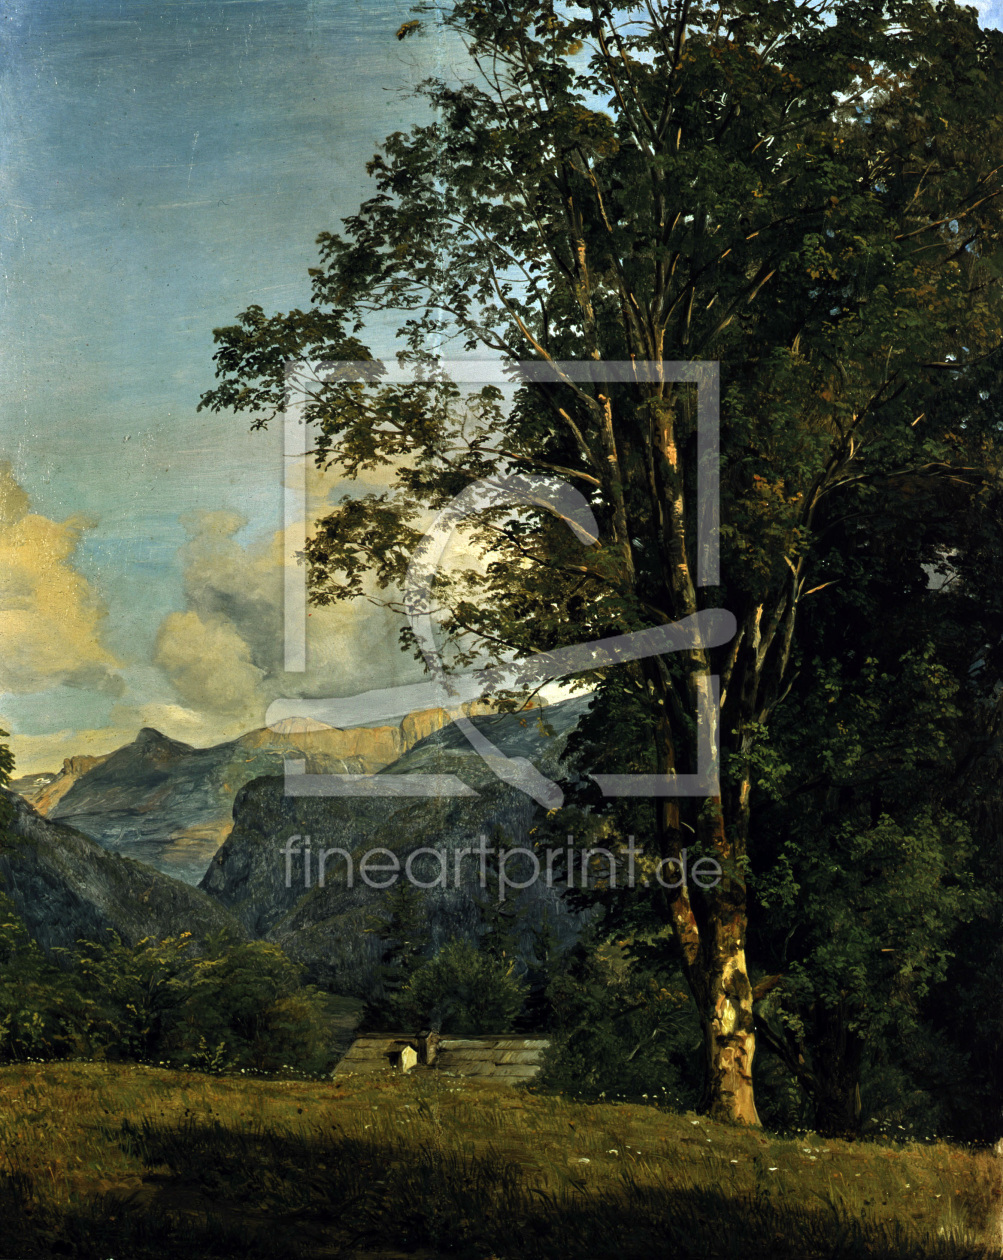 Bild-Nr.: 30009140 Waldmueller / Region near Ahorn / 1833 erstellt von Waldmüller, Ferdinand Georg